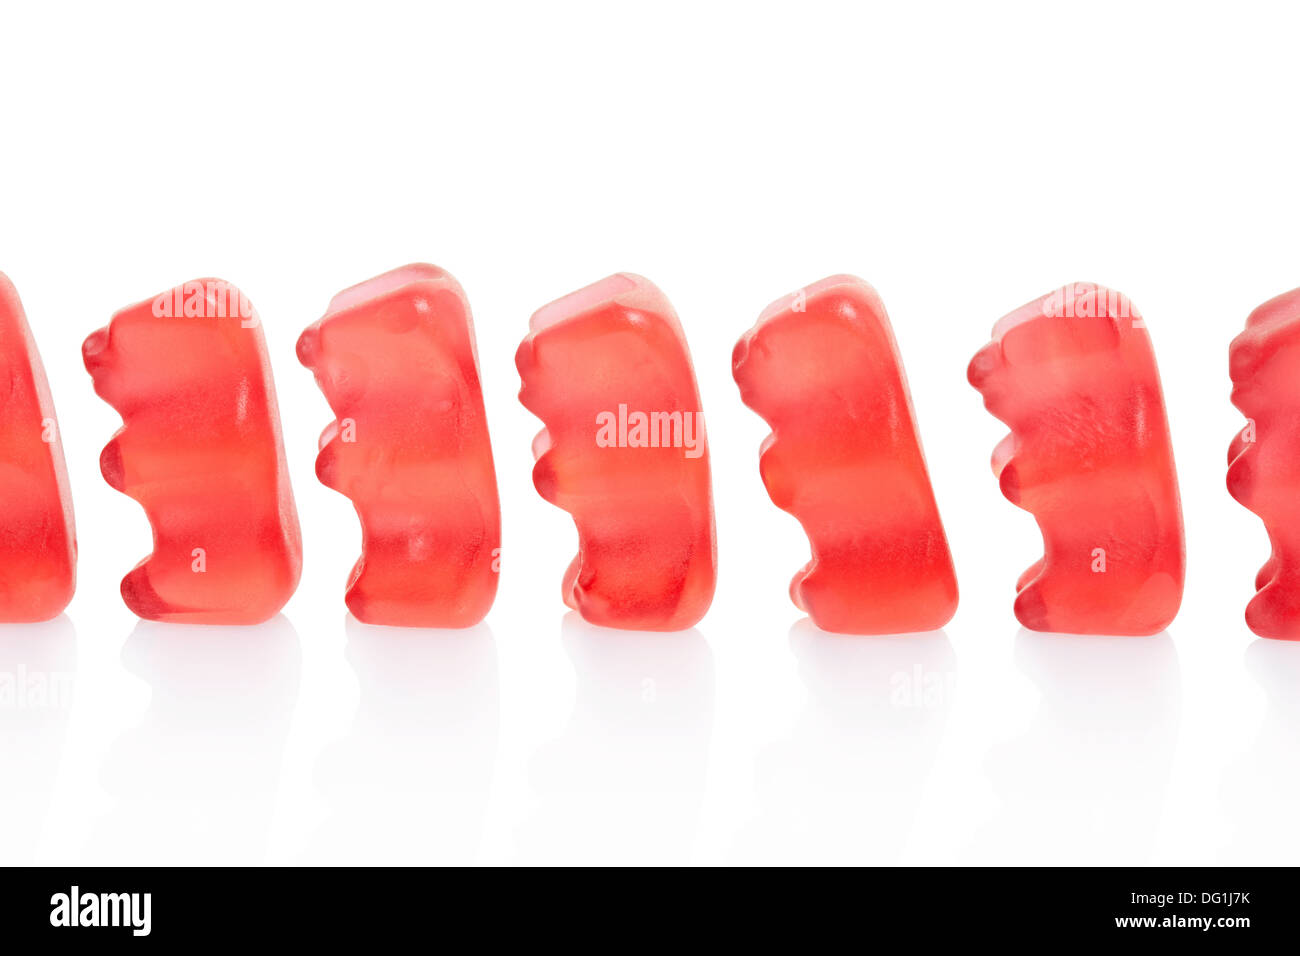 Gummy bears candies queue Stock Photo